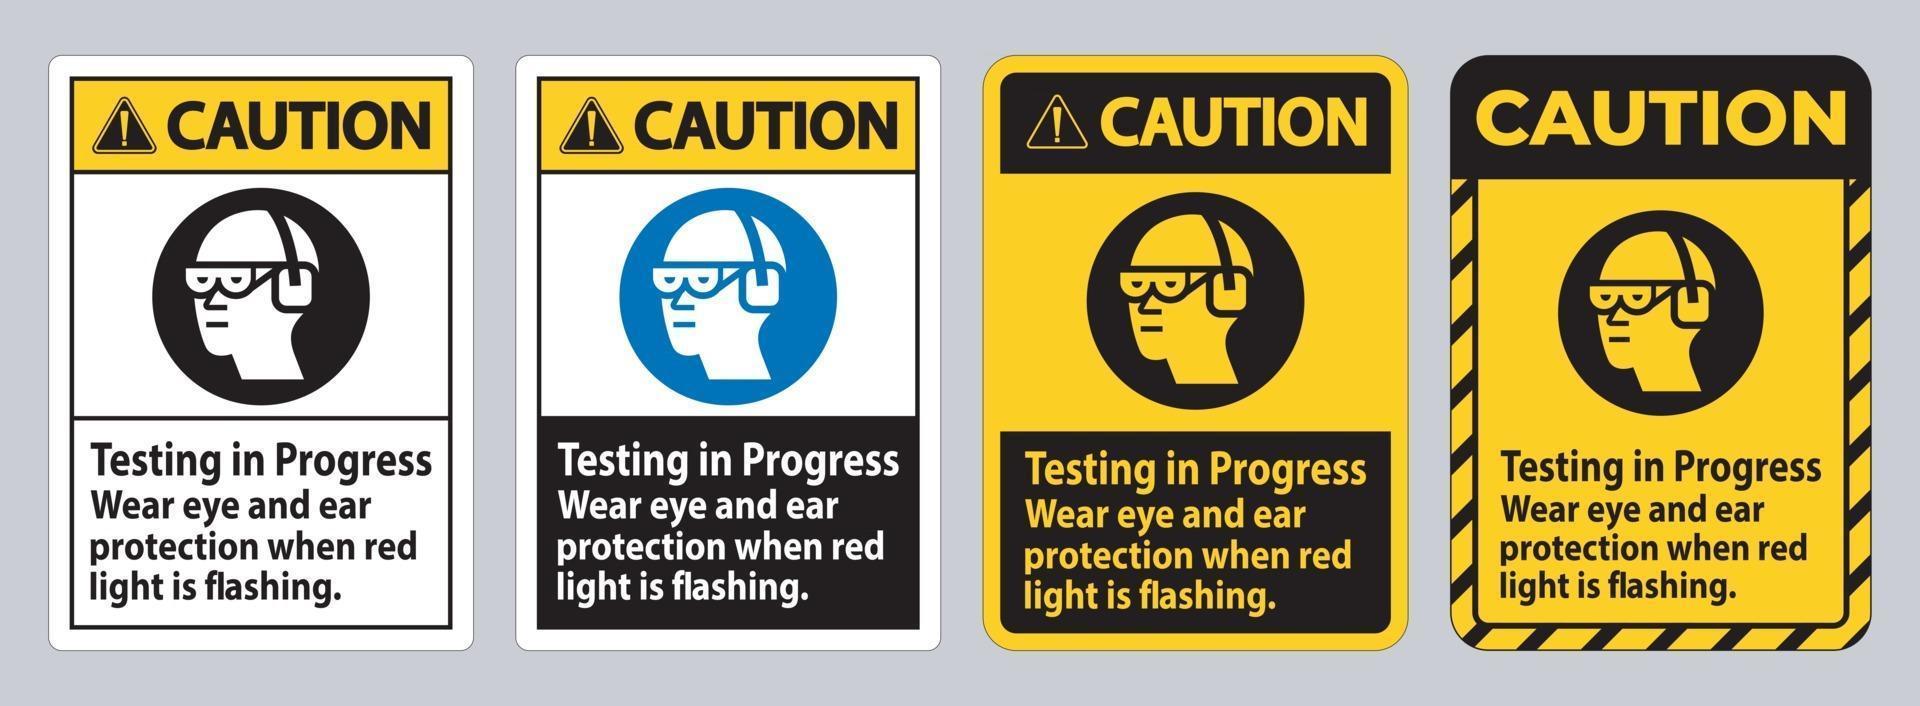 waarschuwingsteken wordt getest, draag oog- en gehoorbescherming als het rode lampje knippert vector